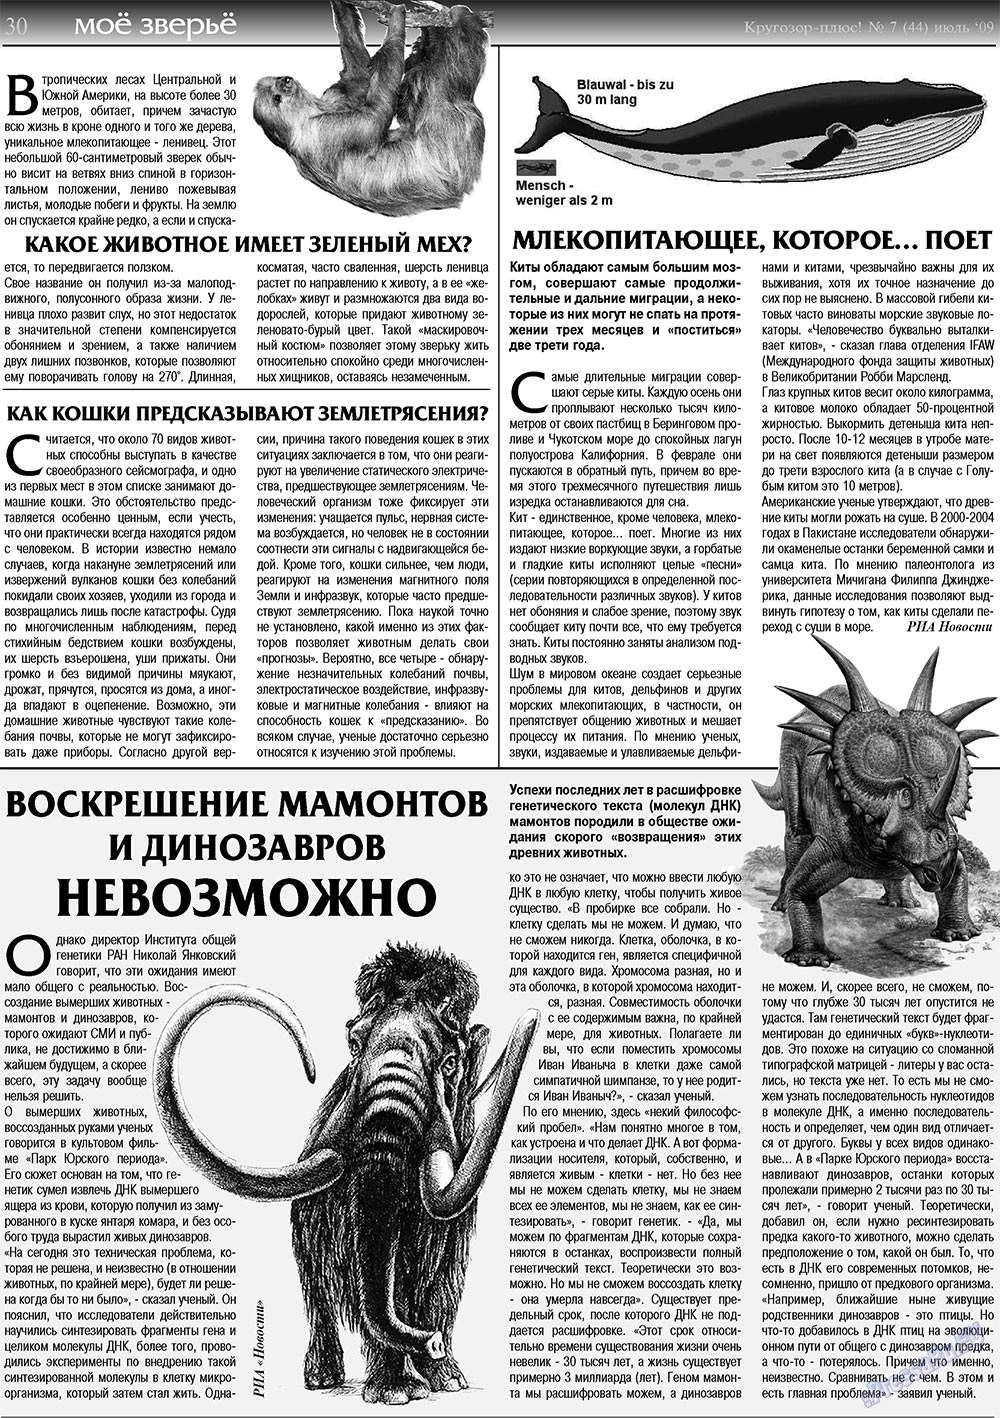 Кругозор плюс!, газета. 2009 №7 стр.30